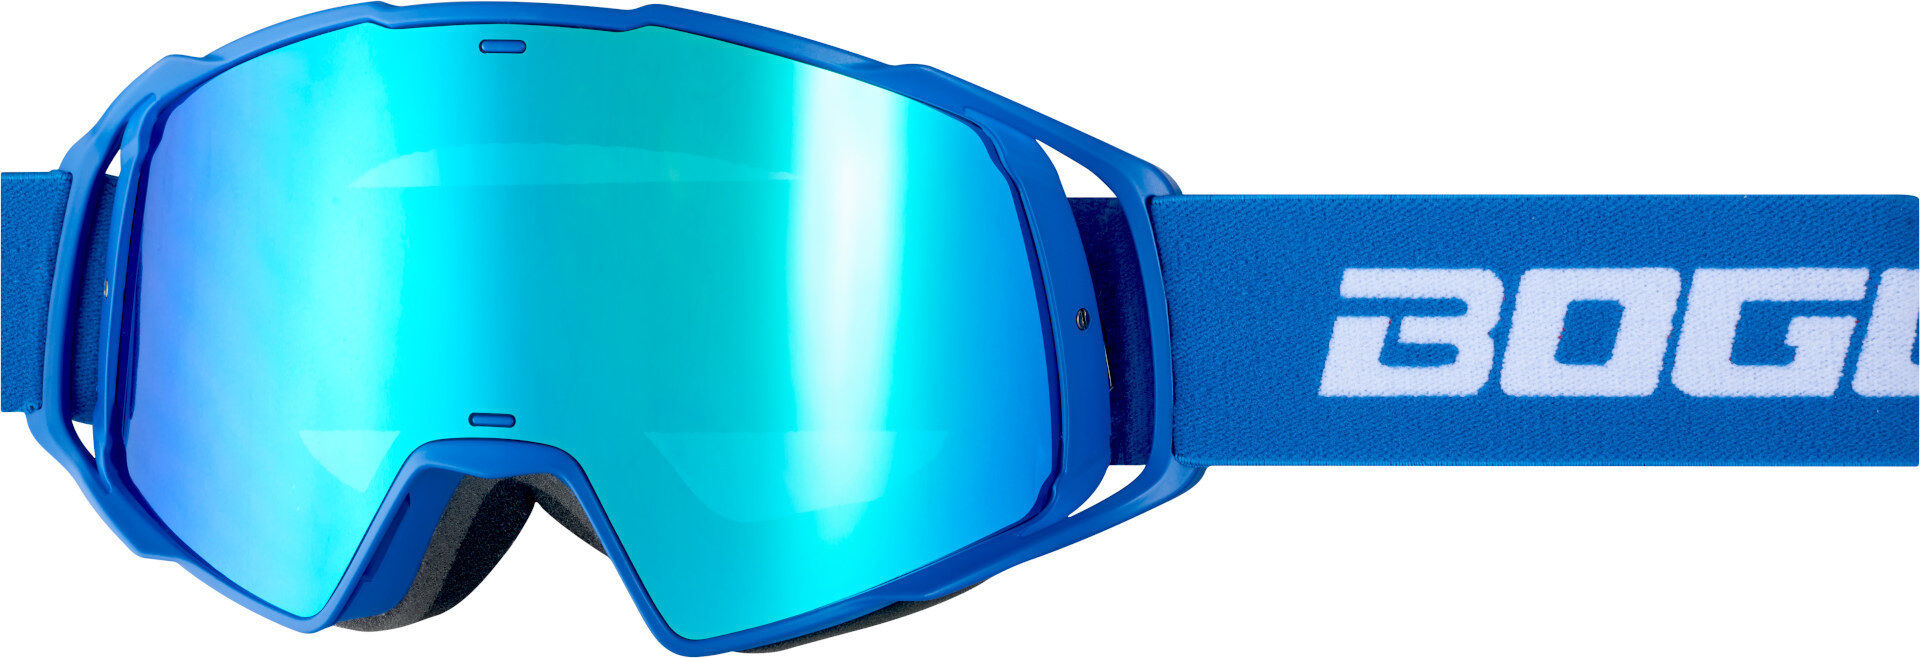 Bogotto B-Faster Gafas motocross - Blanco Azul (un tamaño)